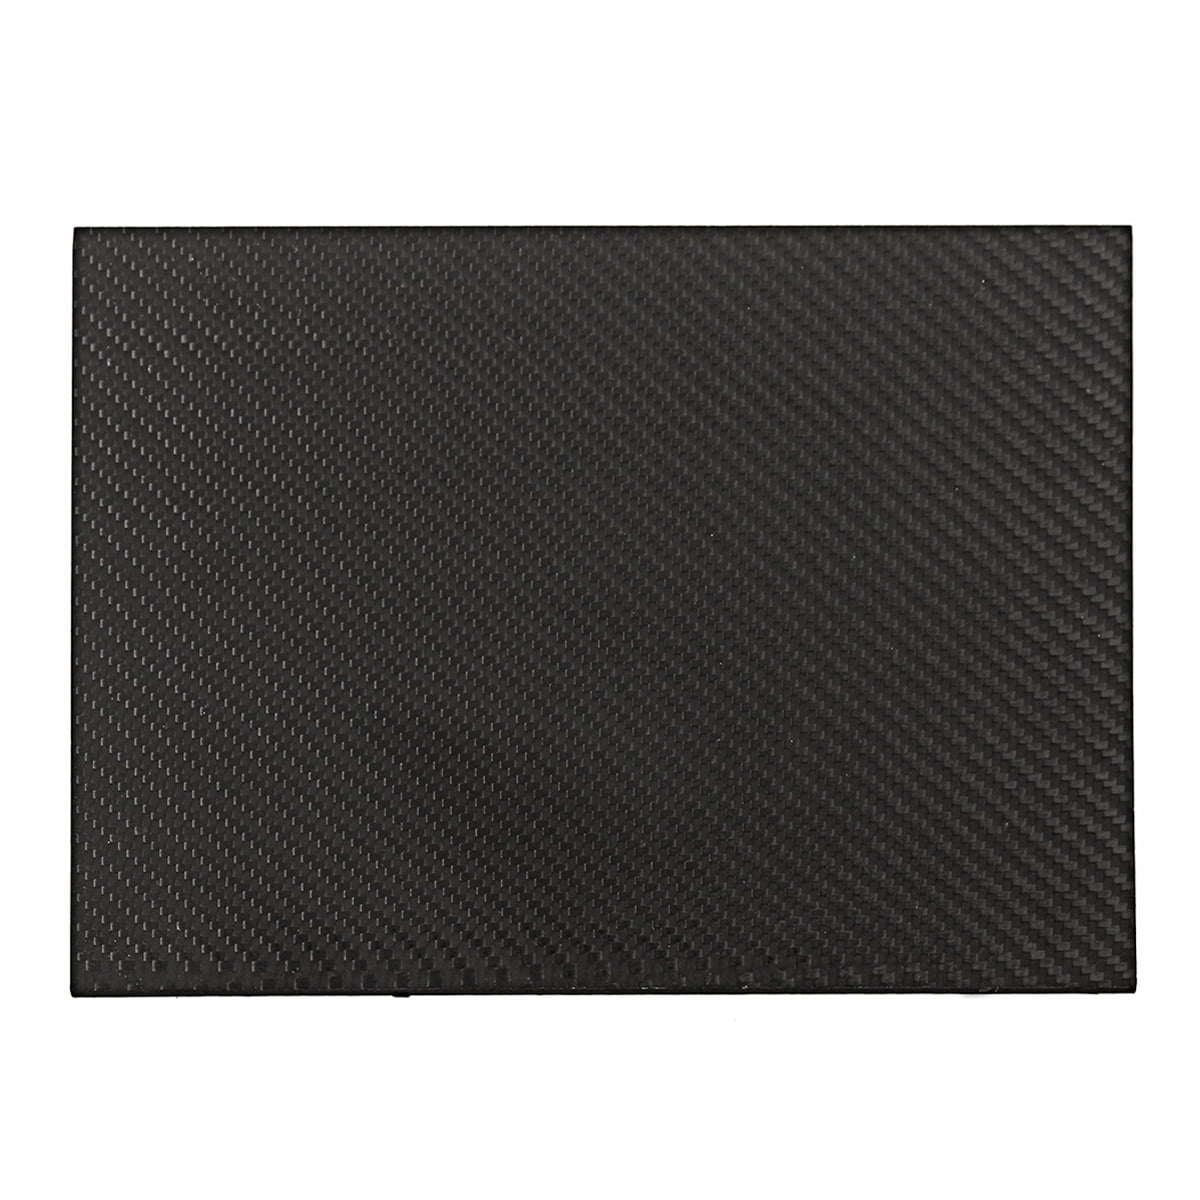 200×300×2/1.5/1/0.5mm Full Carbon Fiber Plate Panel Sheet 3K Plain Weave Glossy 